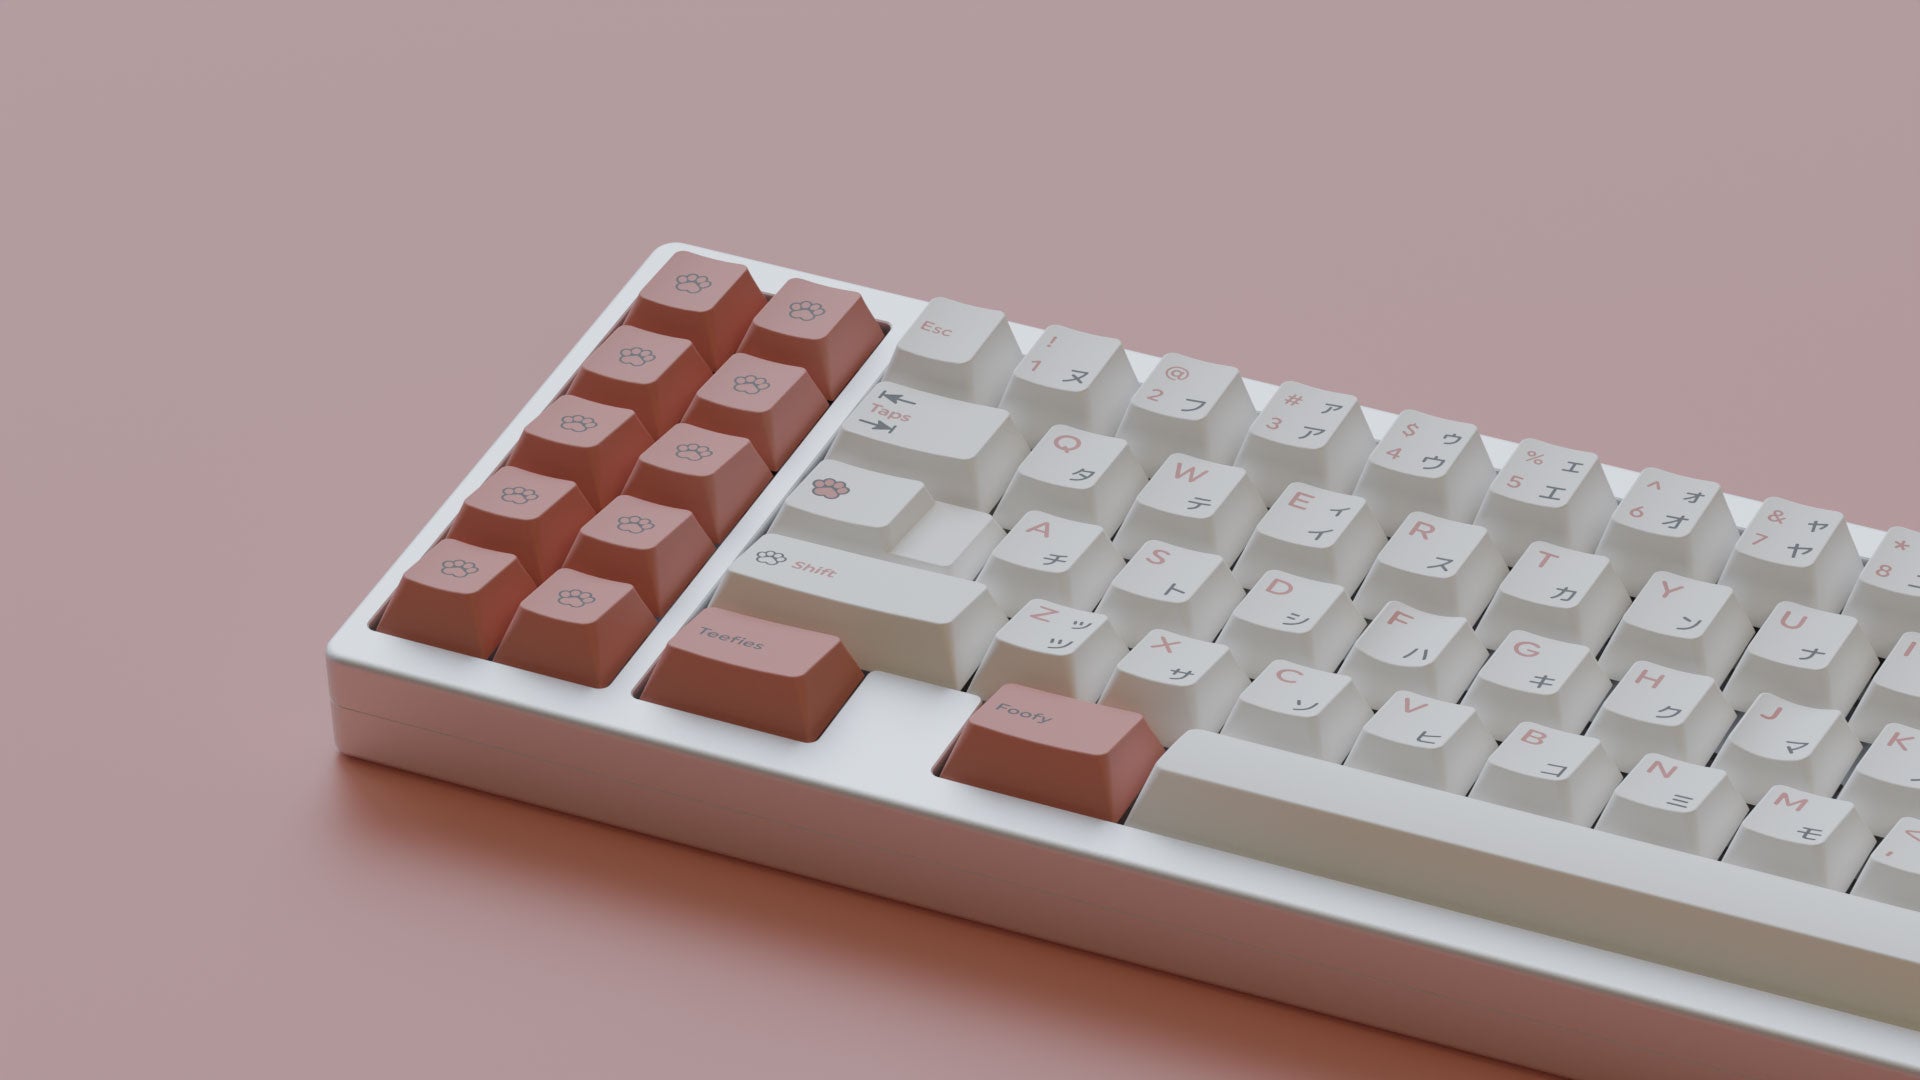 MW-Pono-Light-Keycaps-Mechanical-Keyboard-27